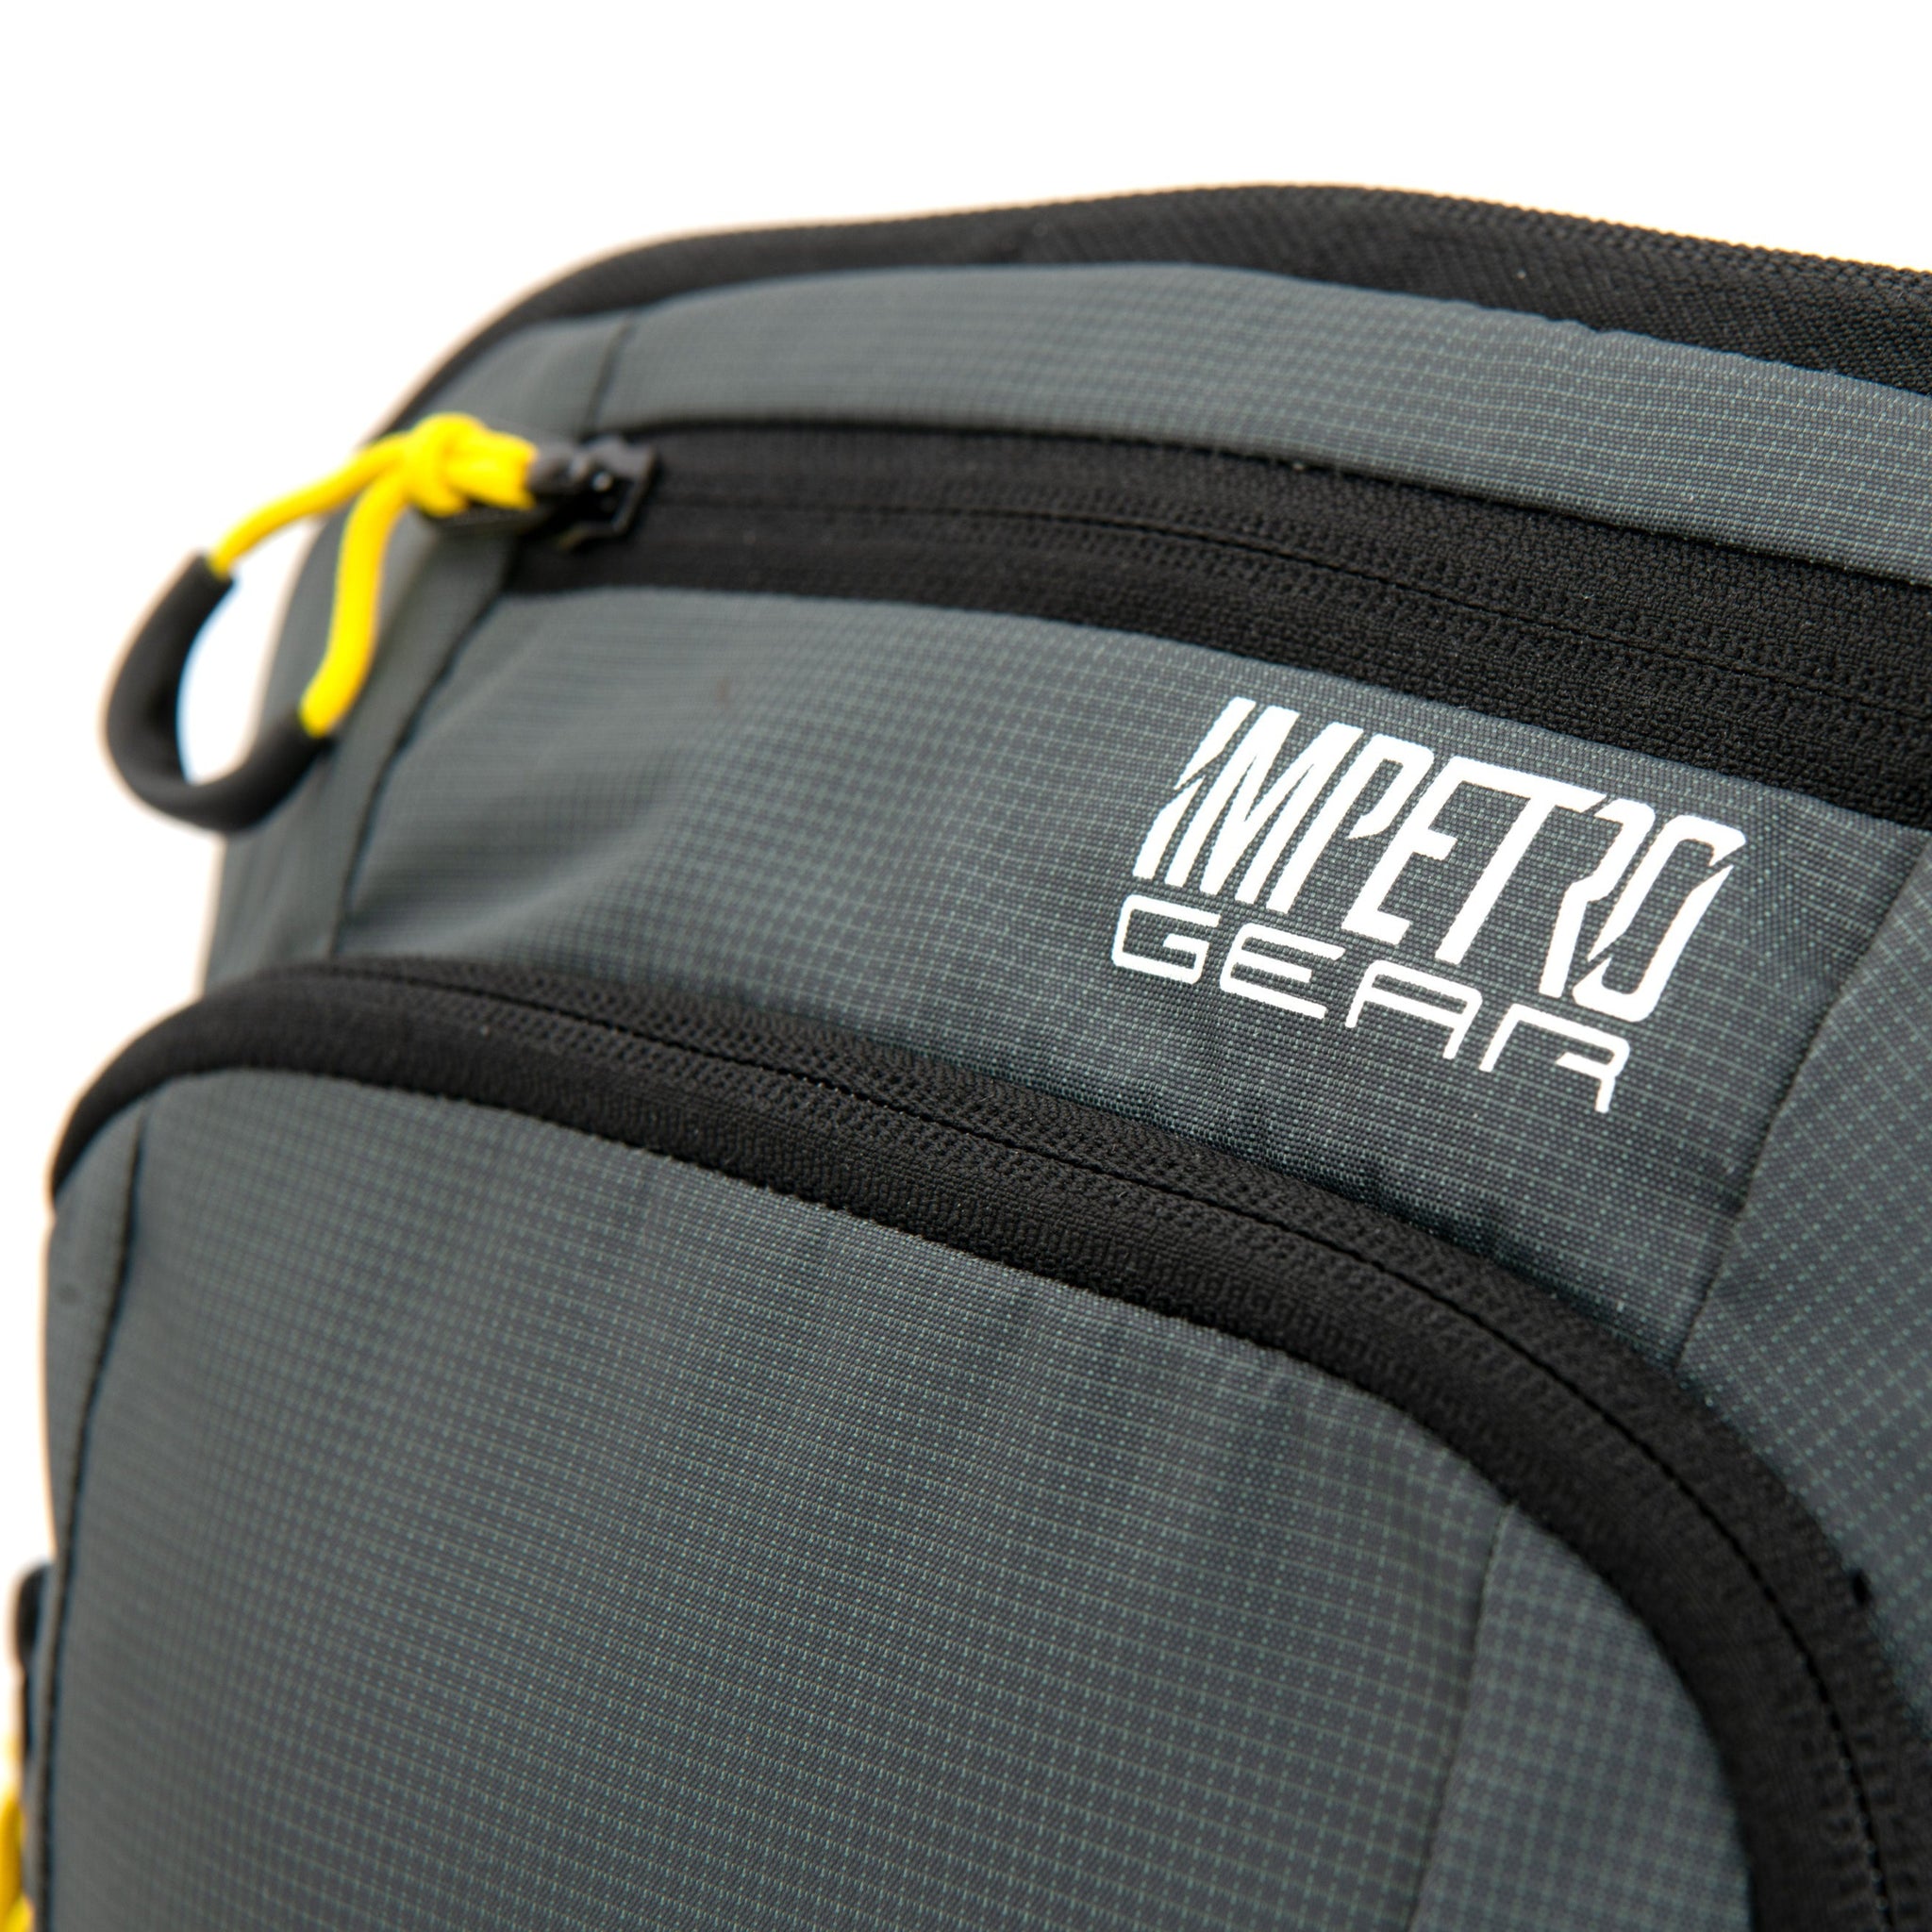 Impetro Gear Backpack Bike/Hike Combo